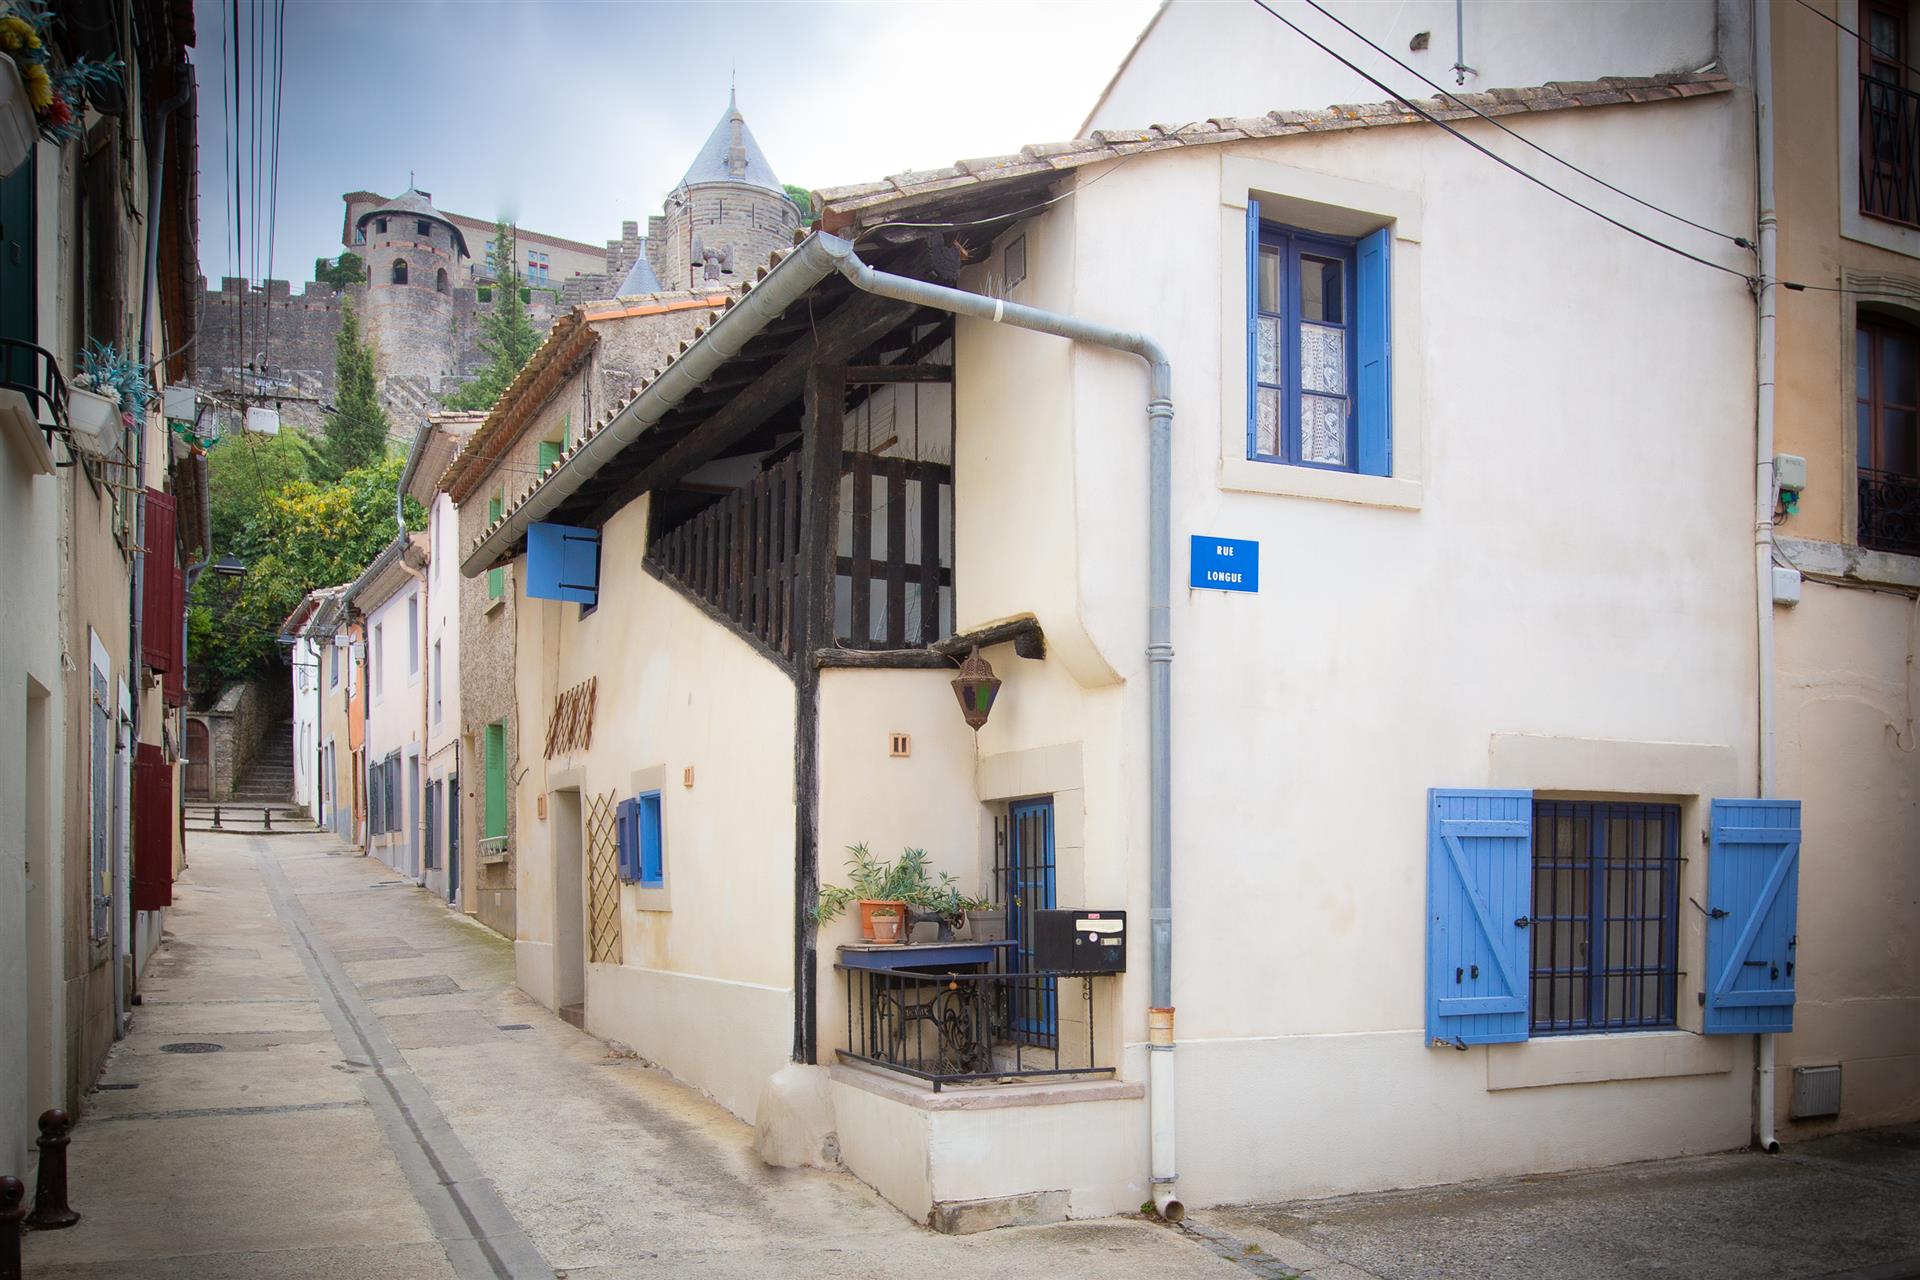 Huis aan de voet van de stad Carcassonne